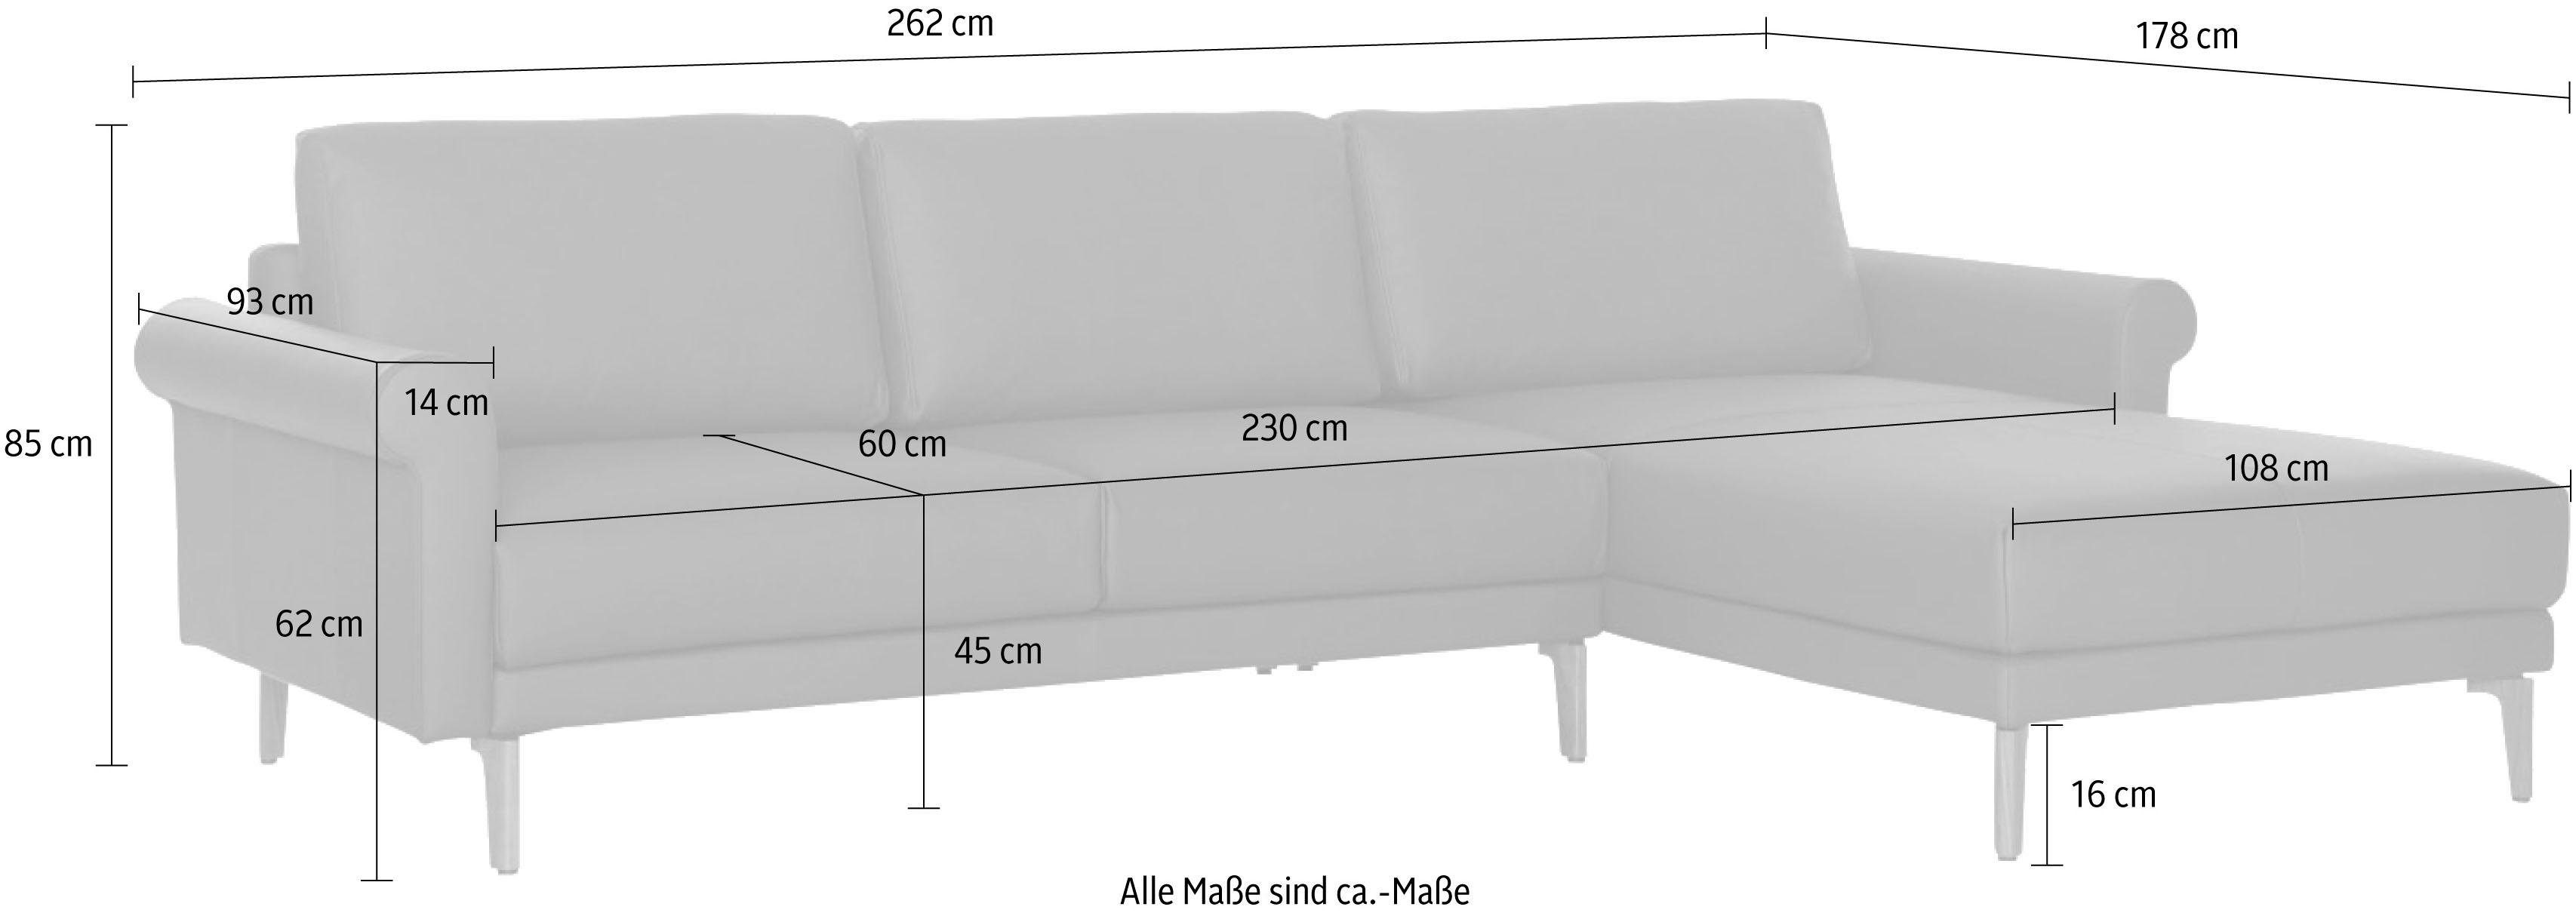 modern Fuß sofa hülsta Ecksofa Landhaus, Armlehne hs.450, cm, Schnecke Breite Nussbaum 262